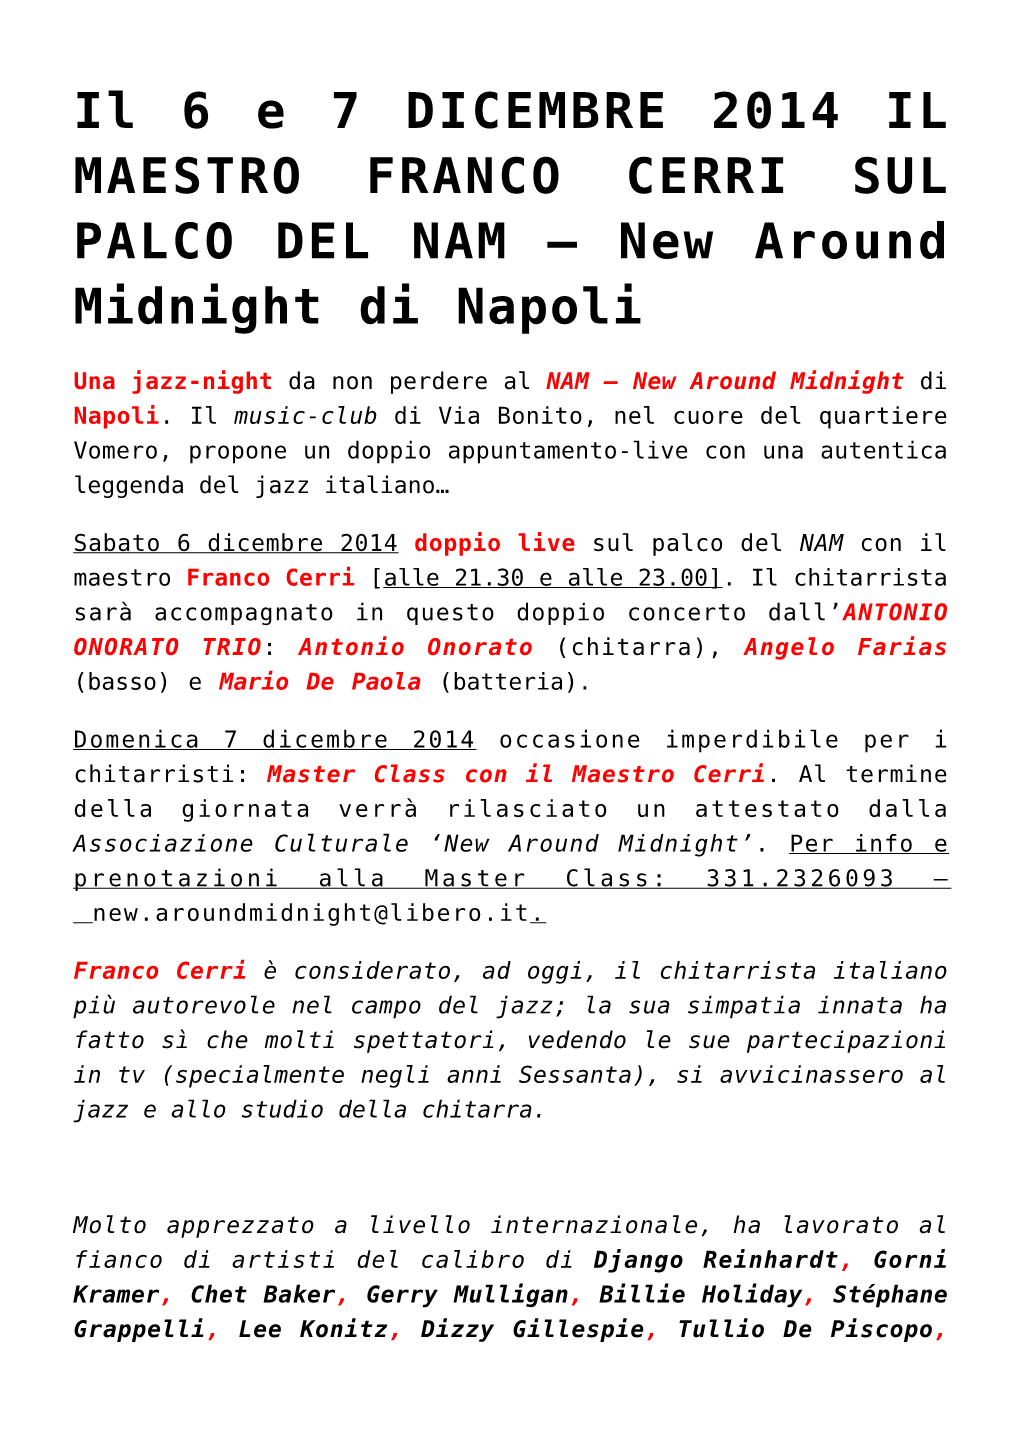 Il 6 E 7 DICEMBRE 2014 IL MAESTRO FRANCO CERRI SUL PALCO DEL NAM – New Around Midnight Di Napoli